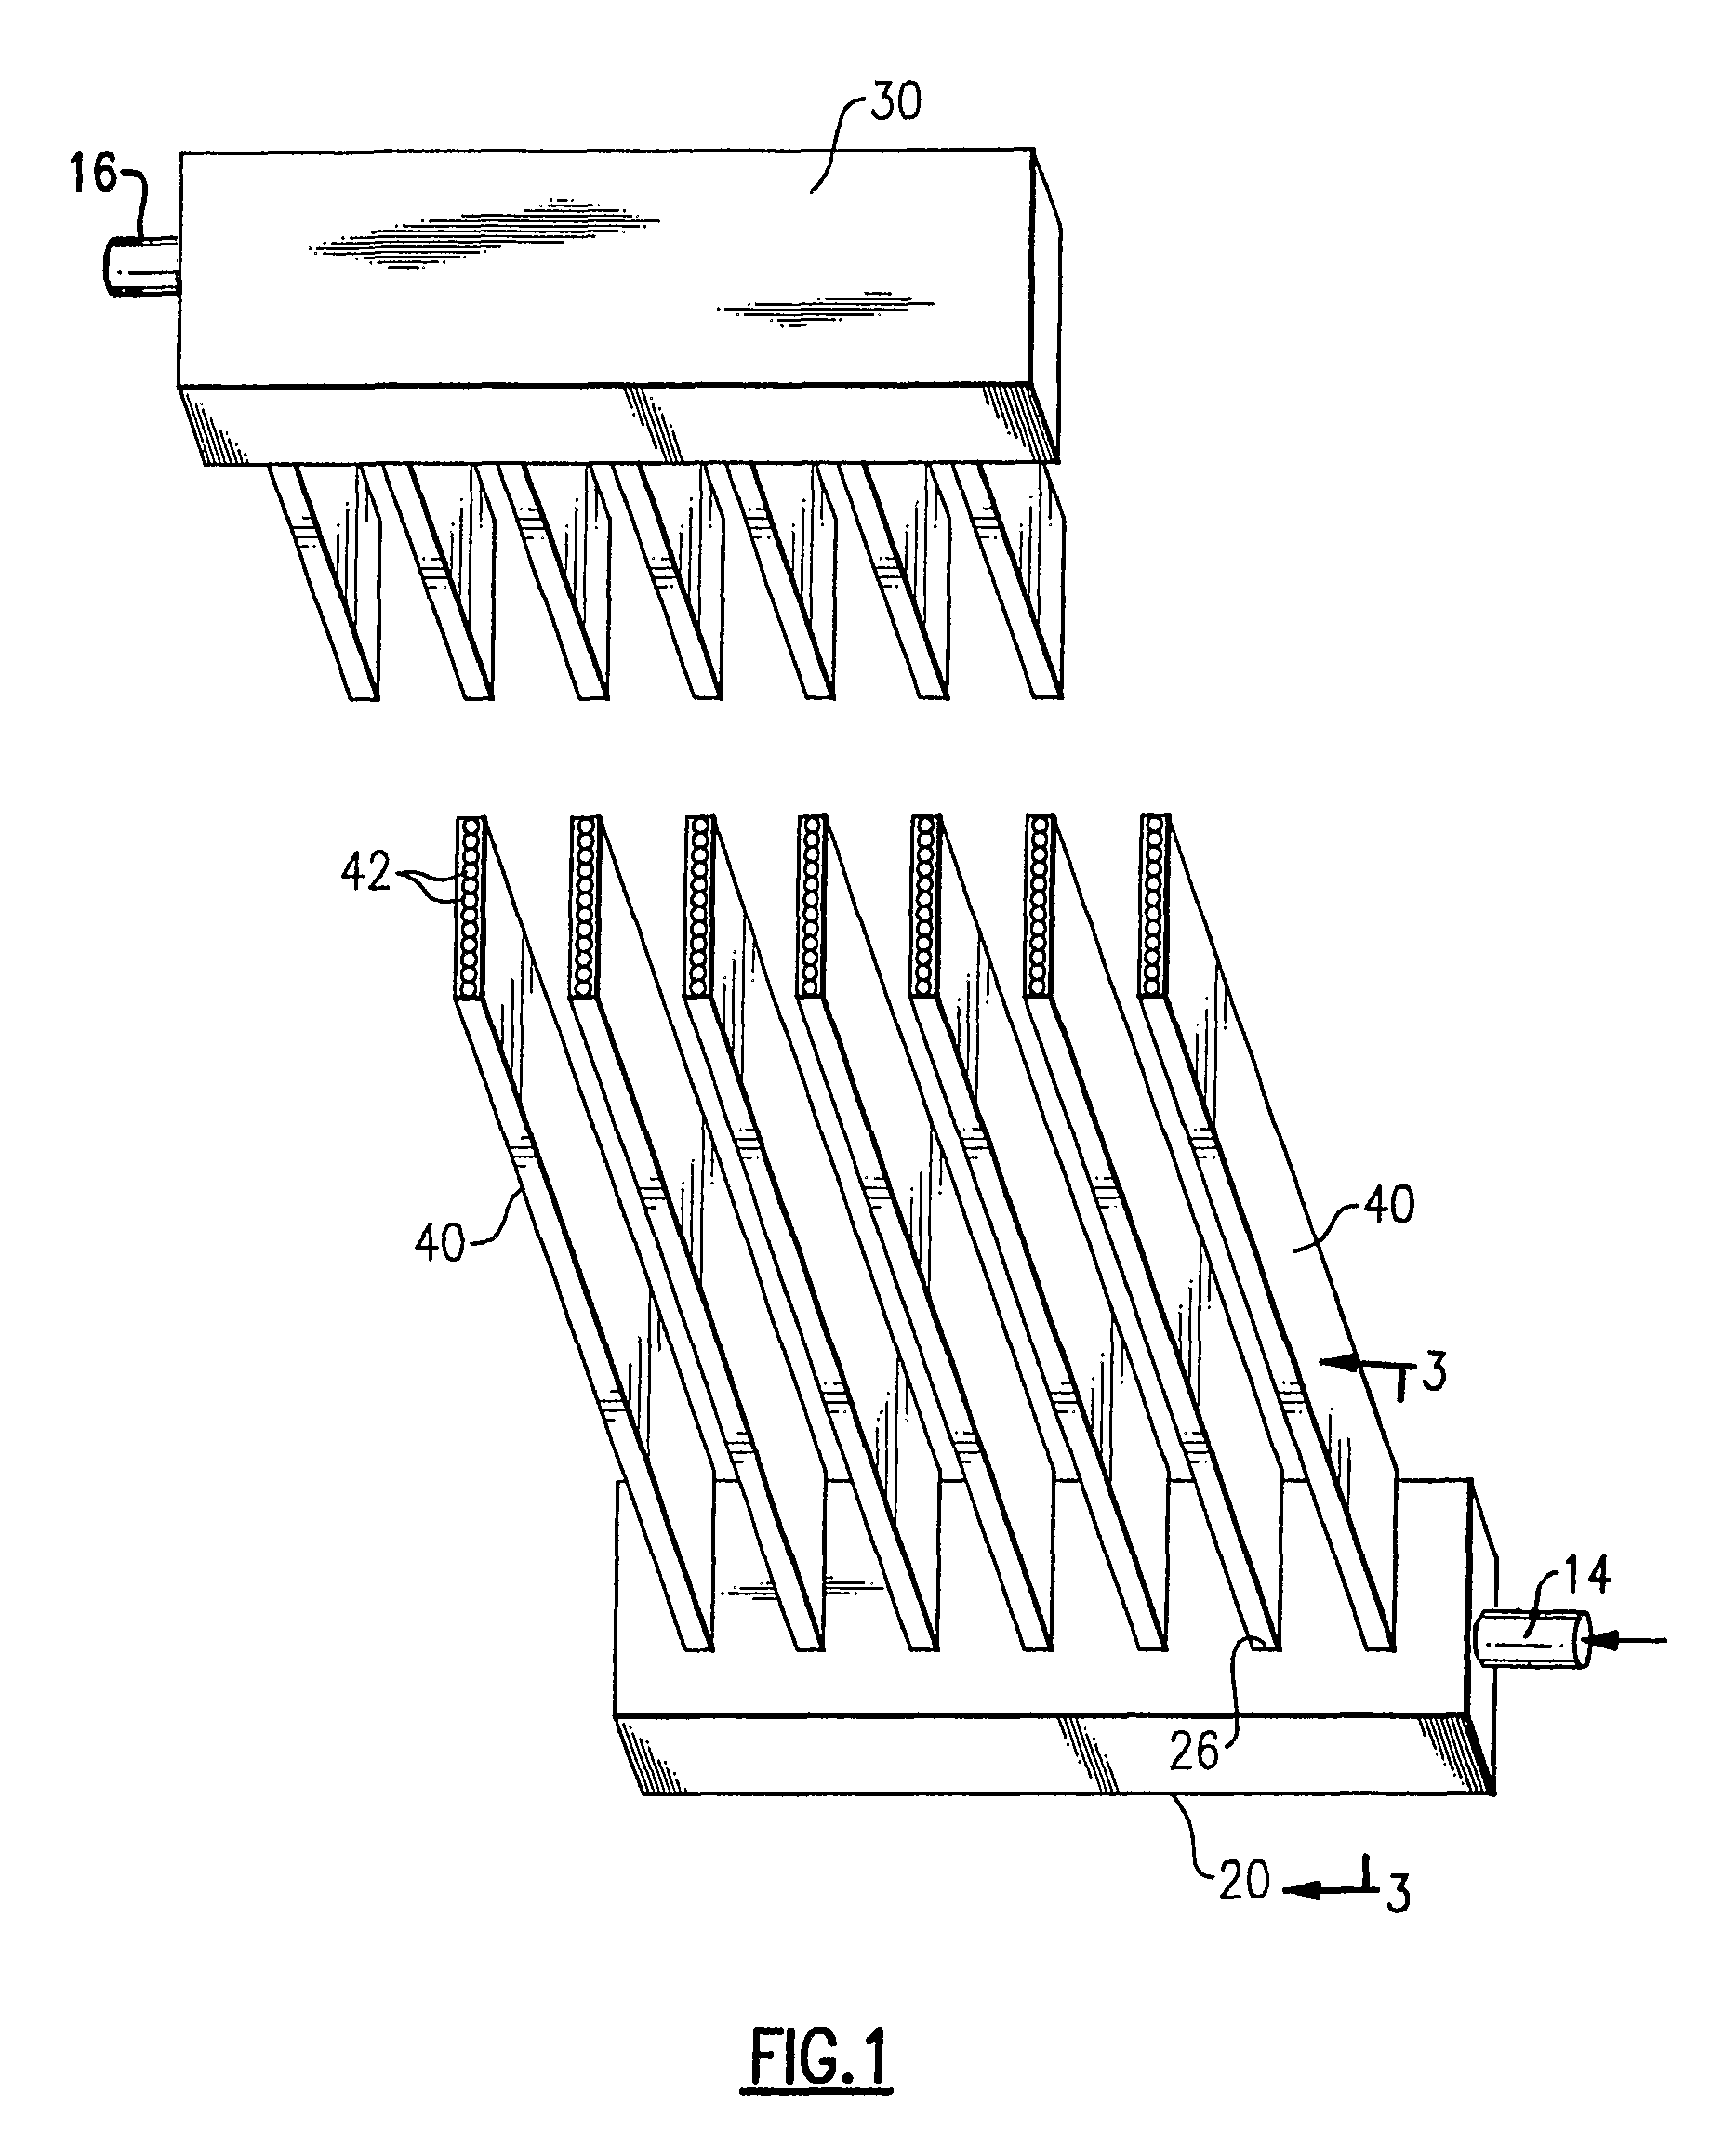 Mini-channel heat exchanger header